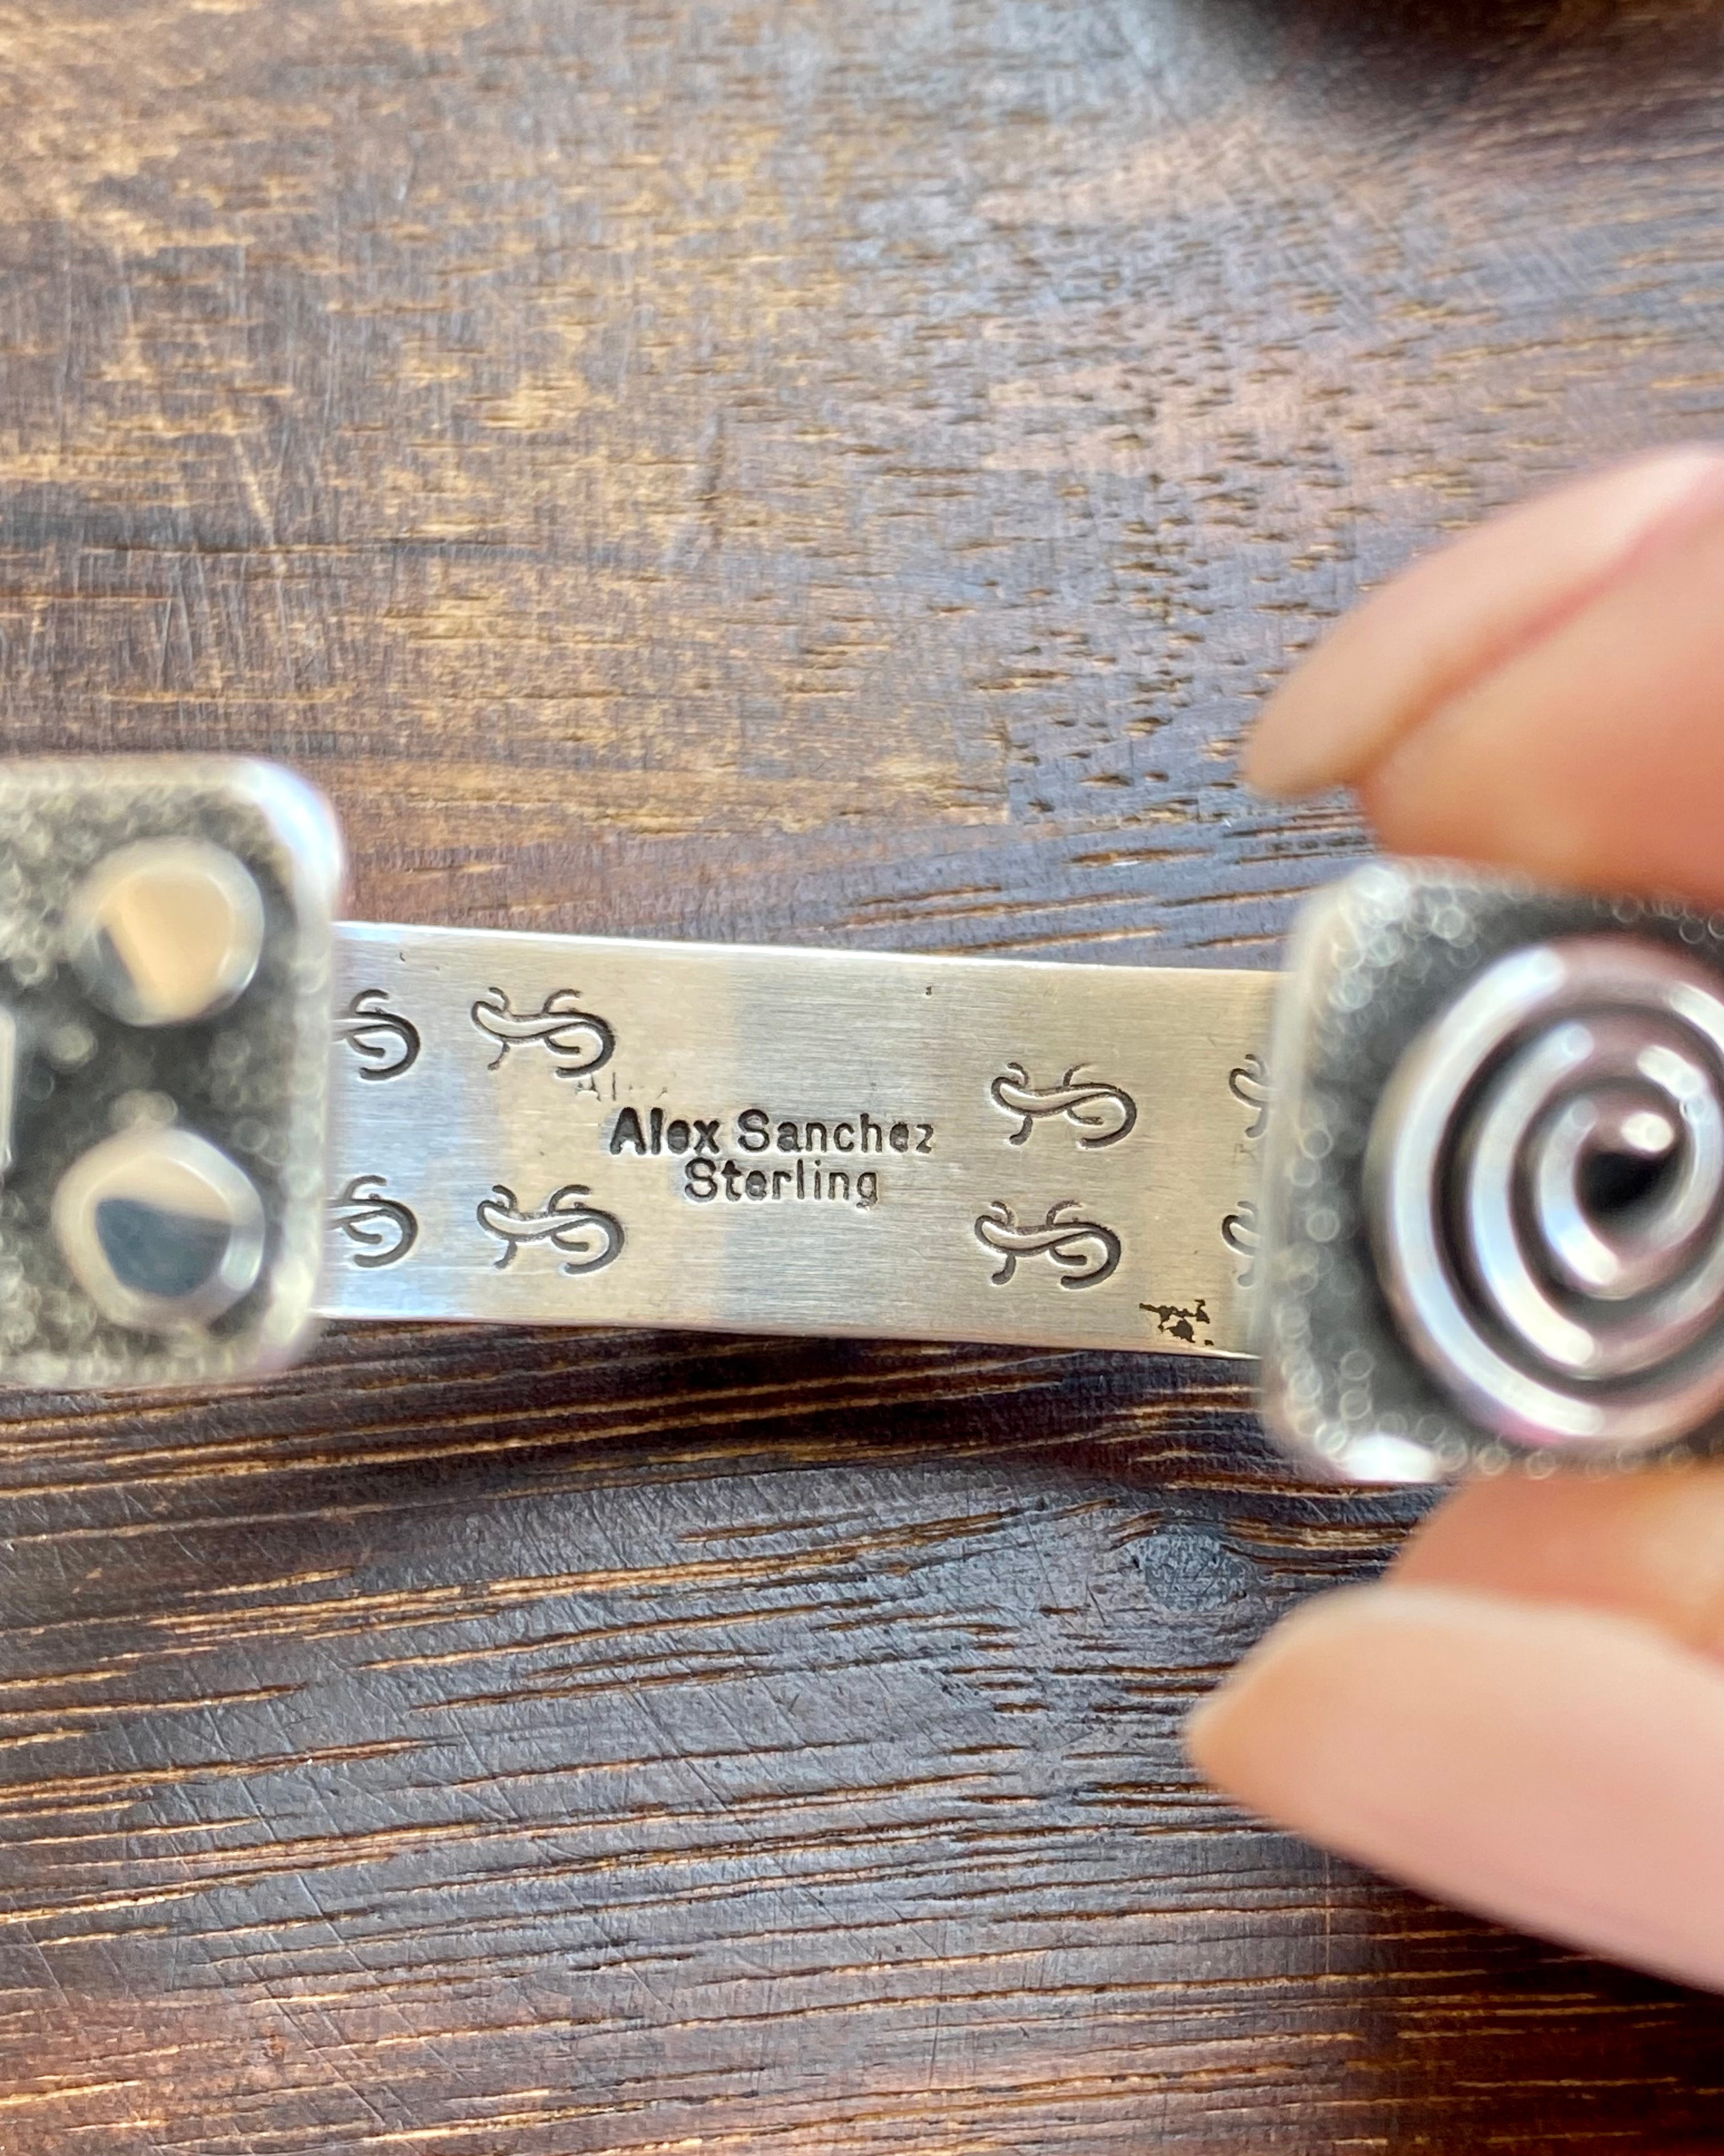 Alex Sanchez Golden Hill’s Turquoise & Sterling Silver Cuff Bracelet